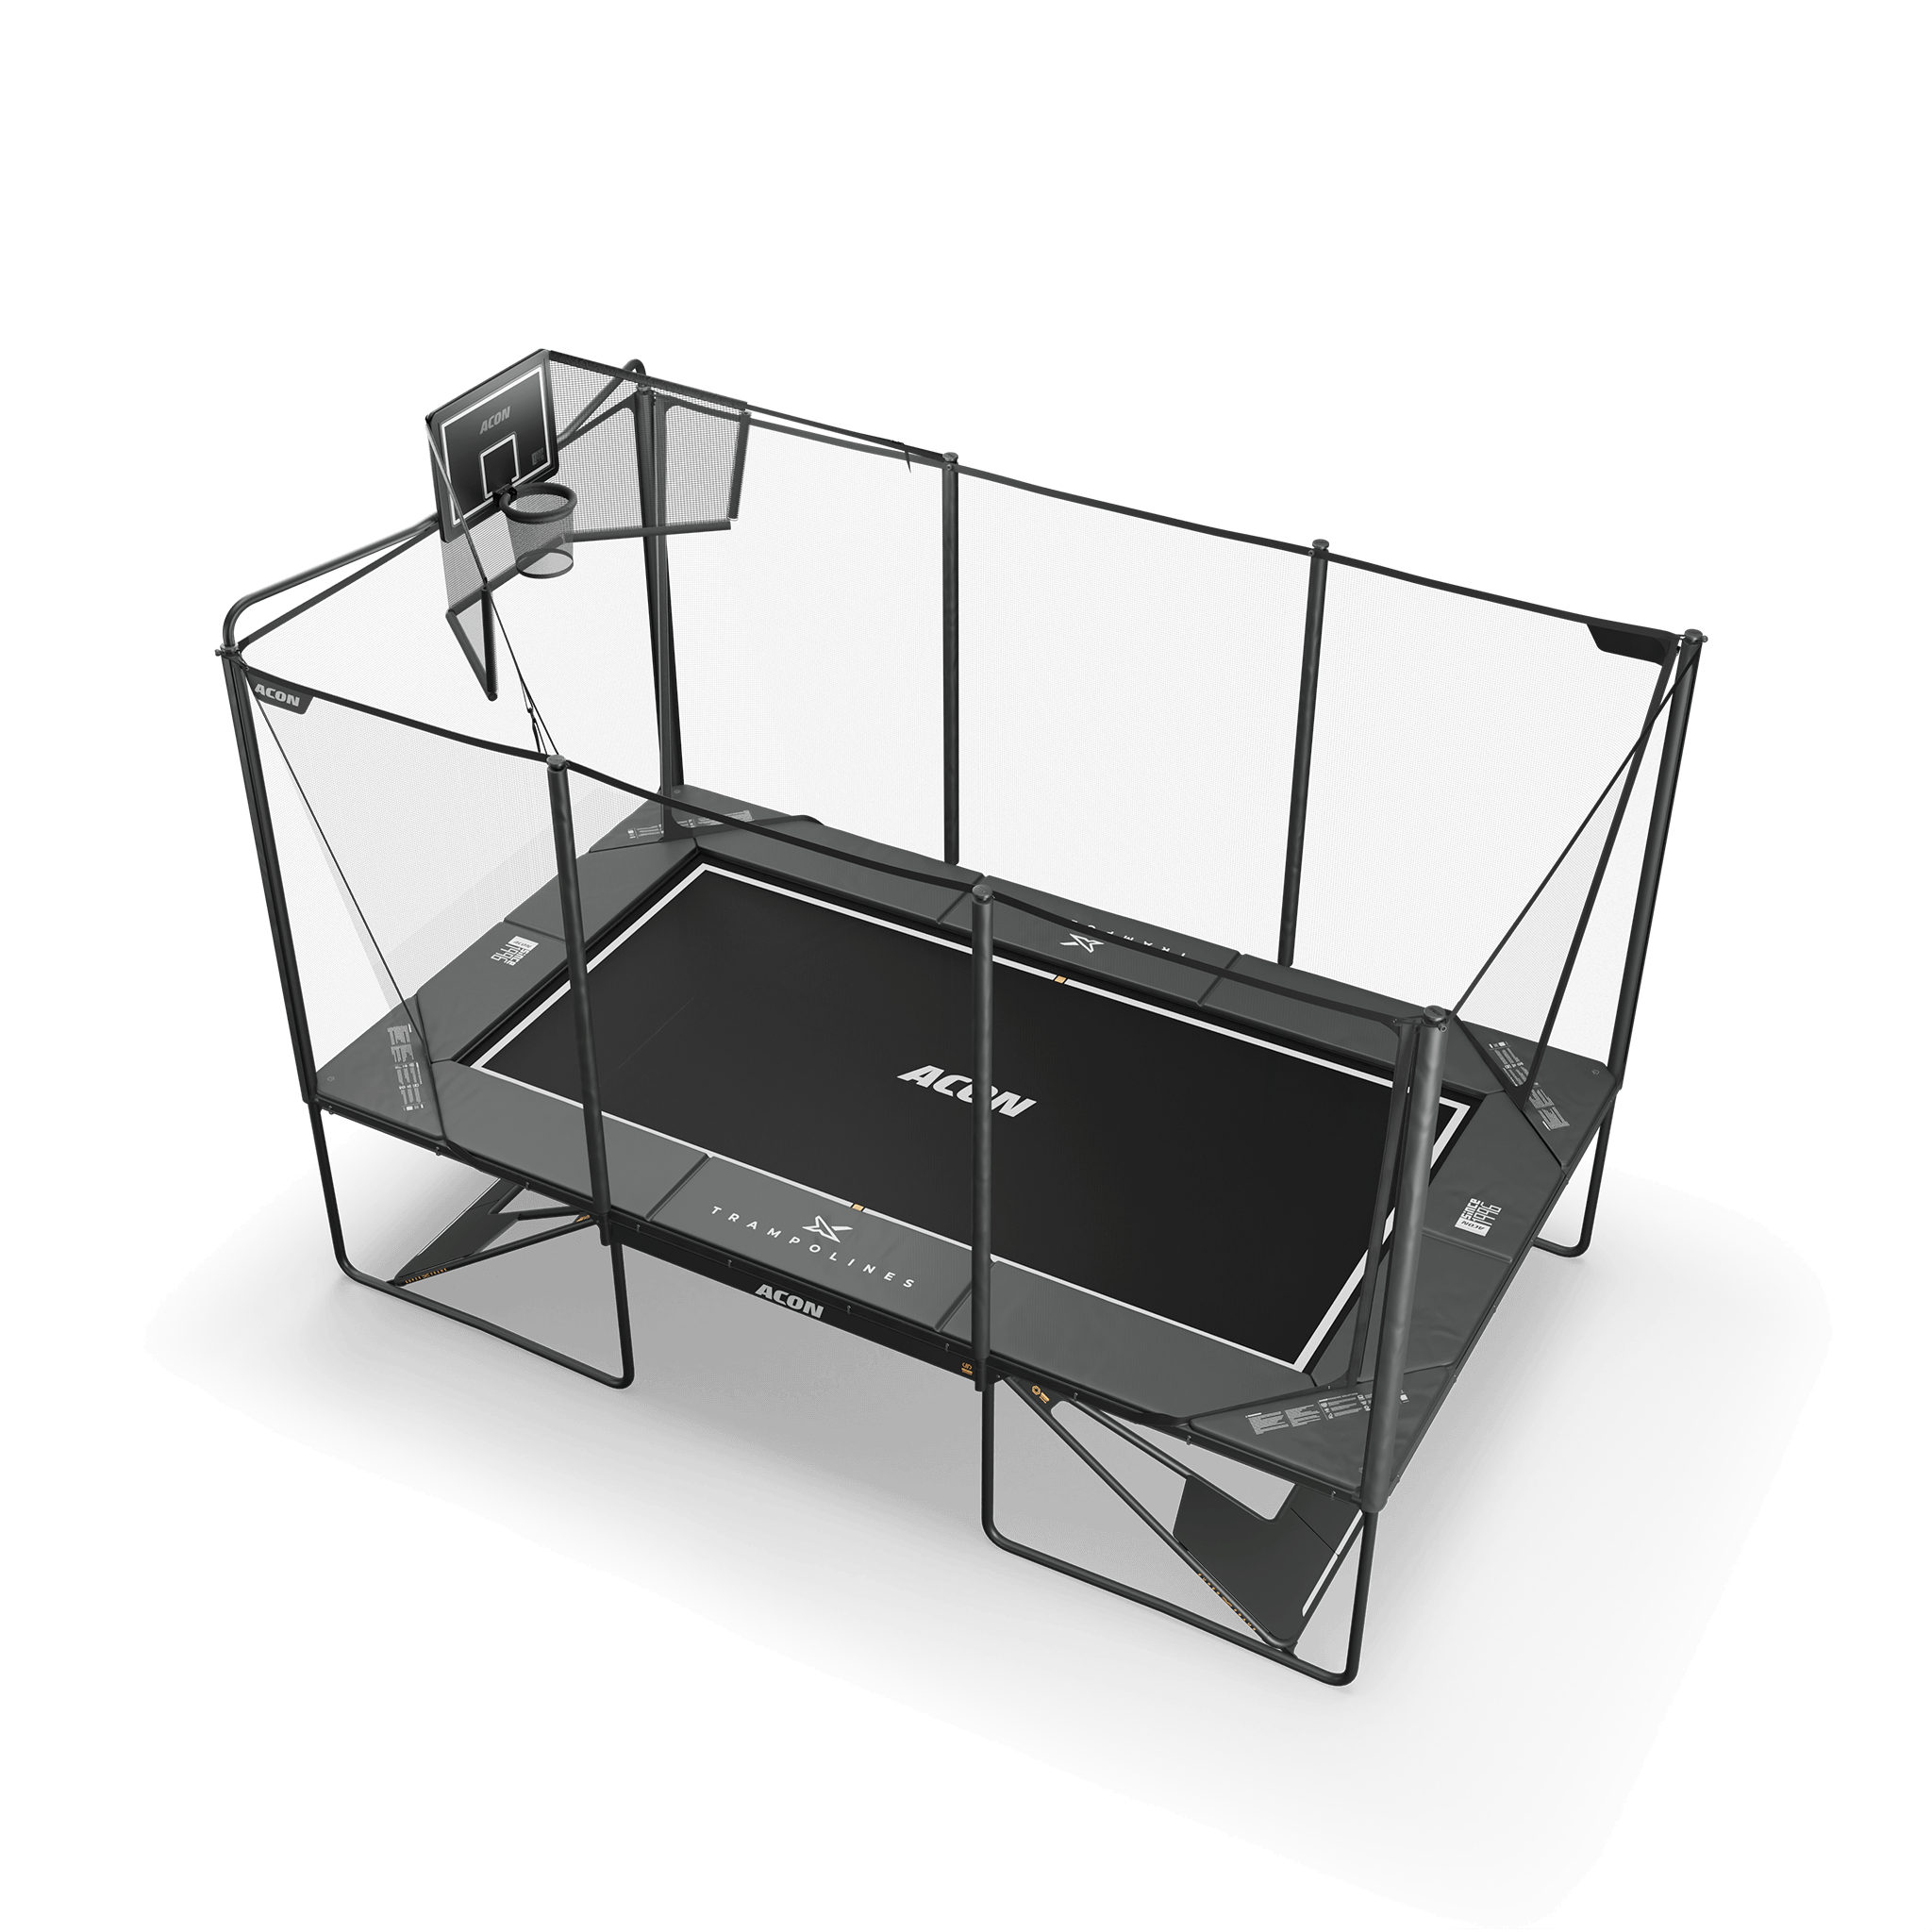 Acon X 17ft suorakulmainen trampoliini, jossa Acon X-koripallokori ja takaverkko.